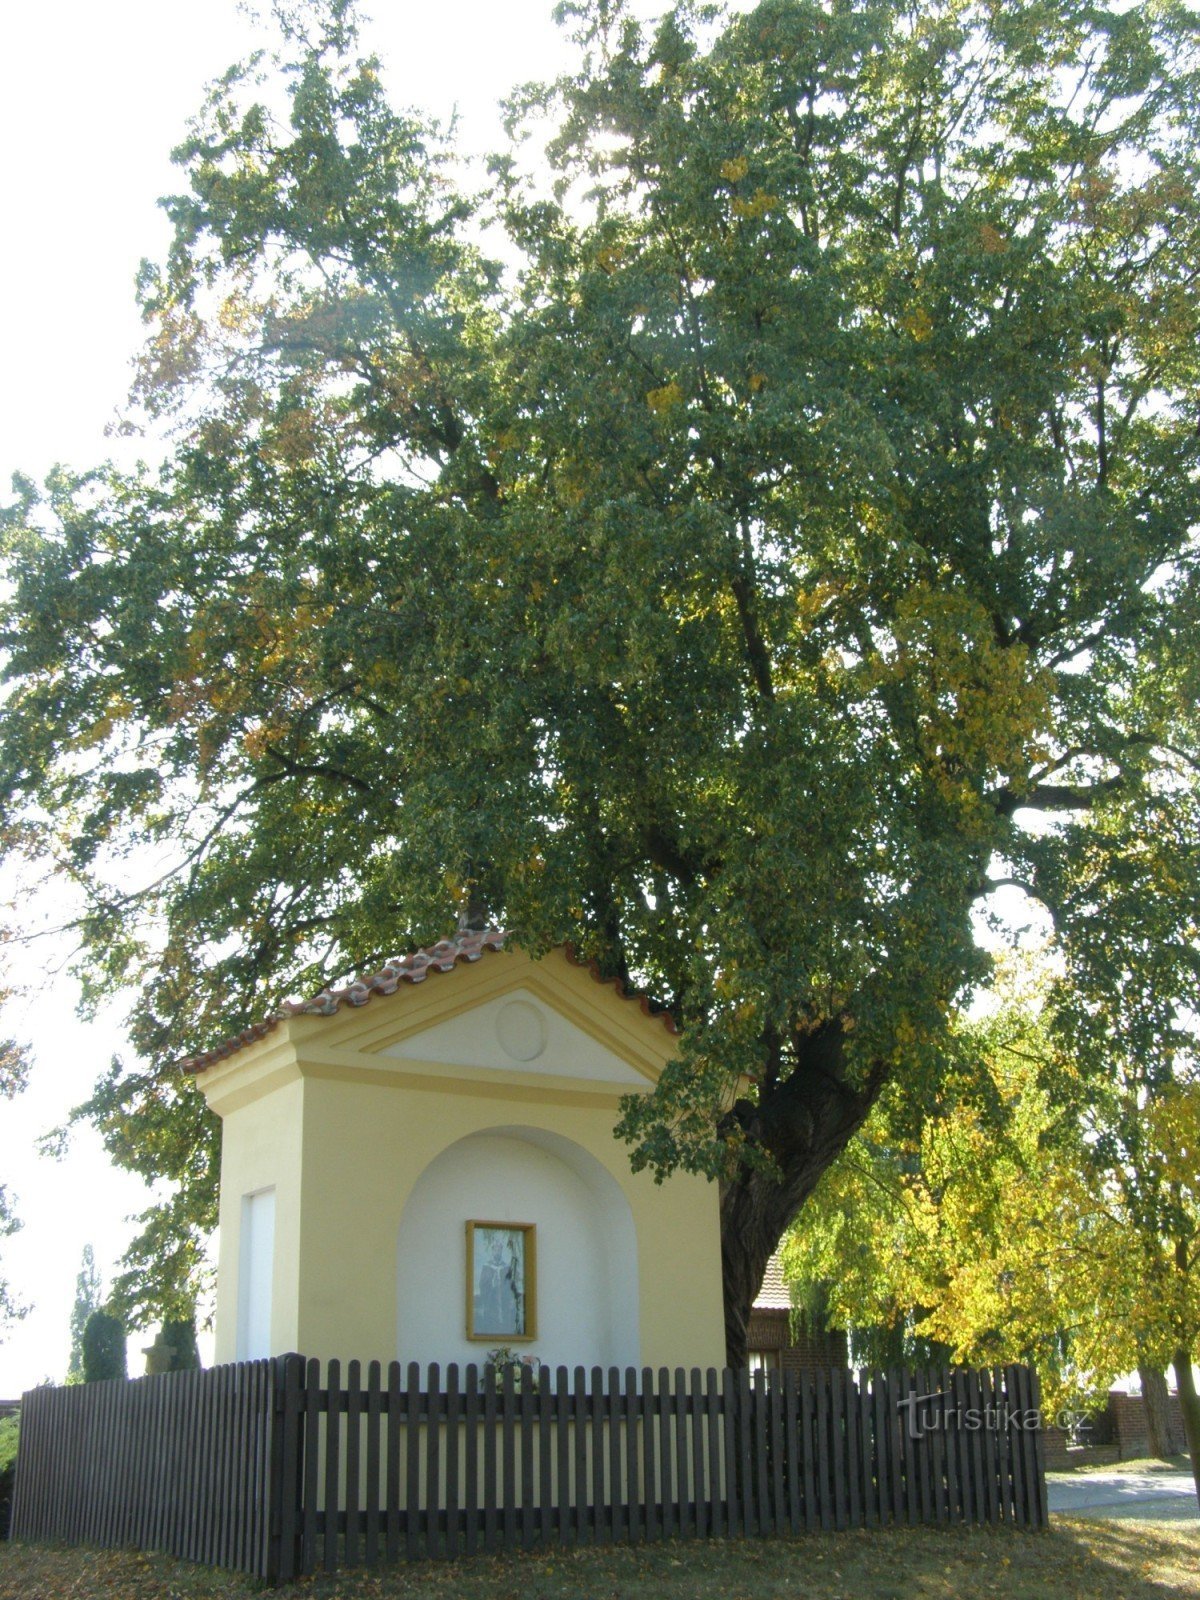 Kratonohos - chapelle